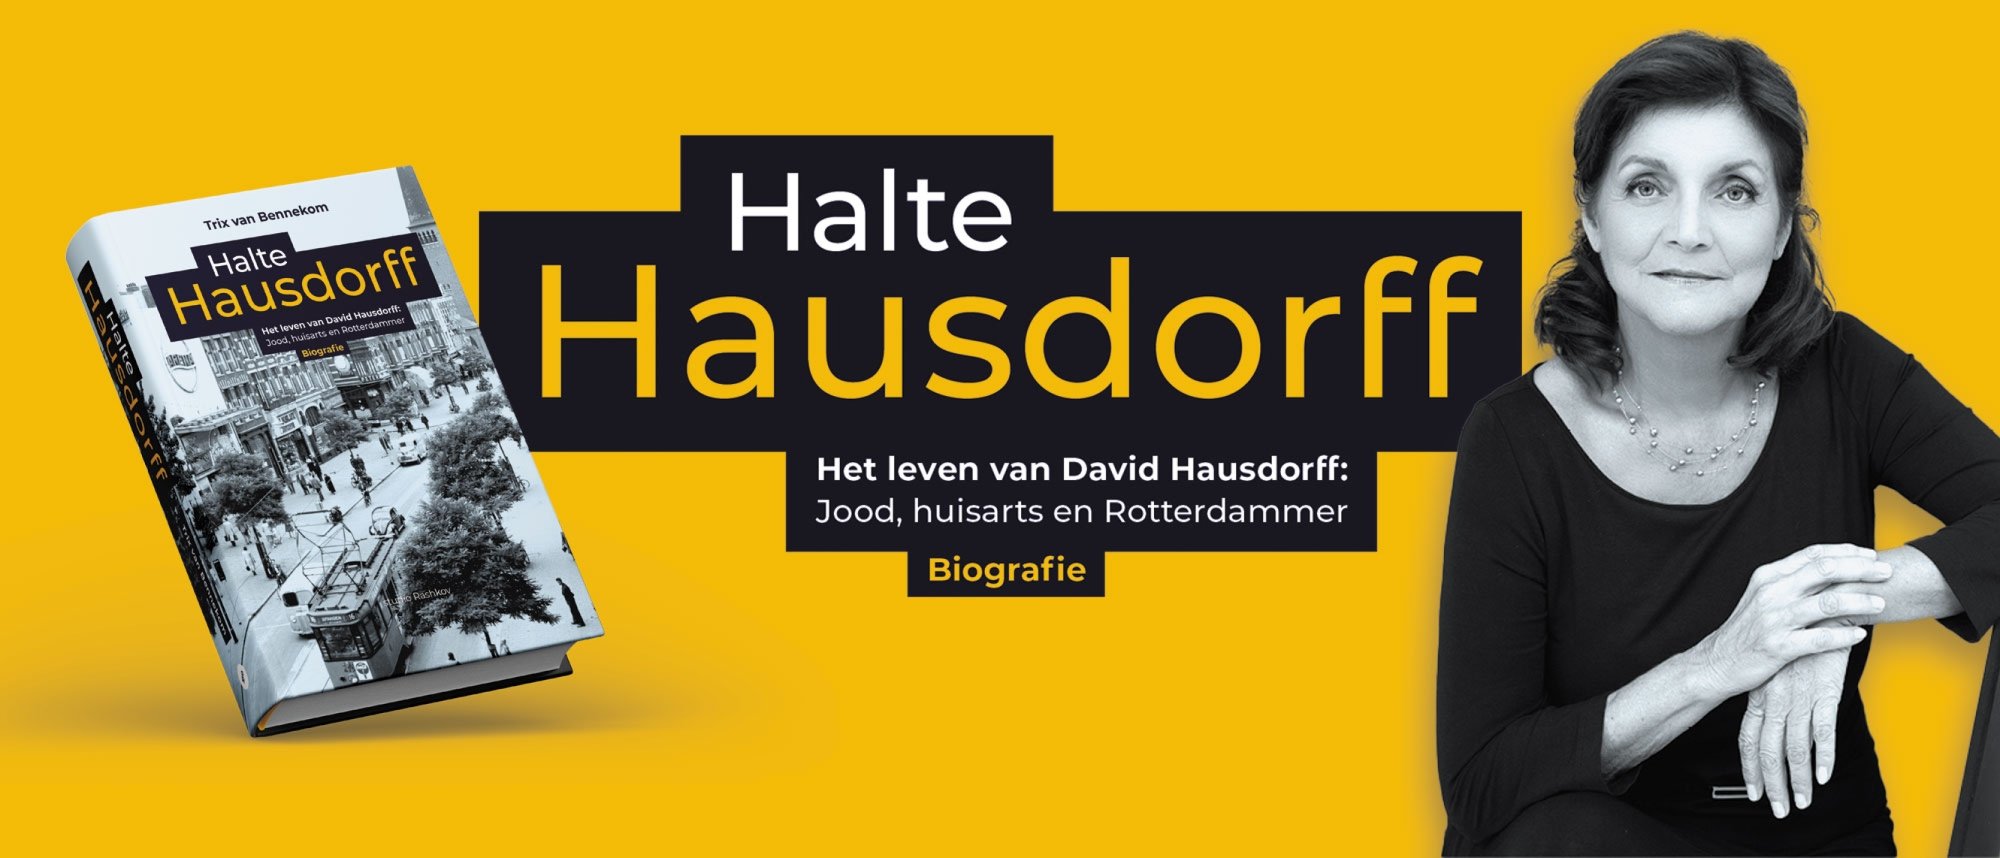 Boekpresentatie Halte Hausdorff door Trix van Bennekom